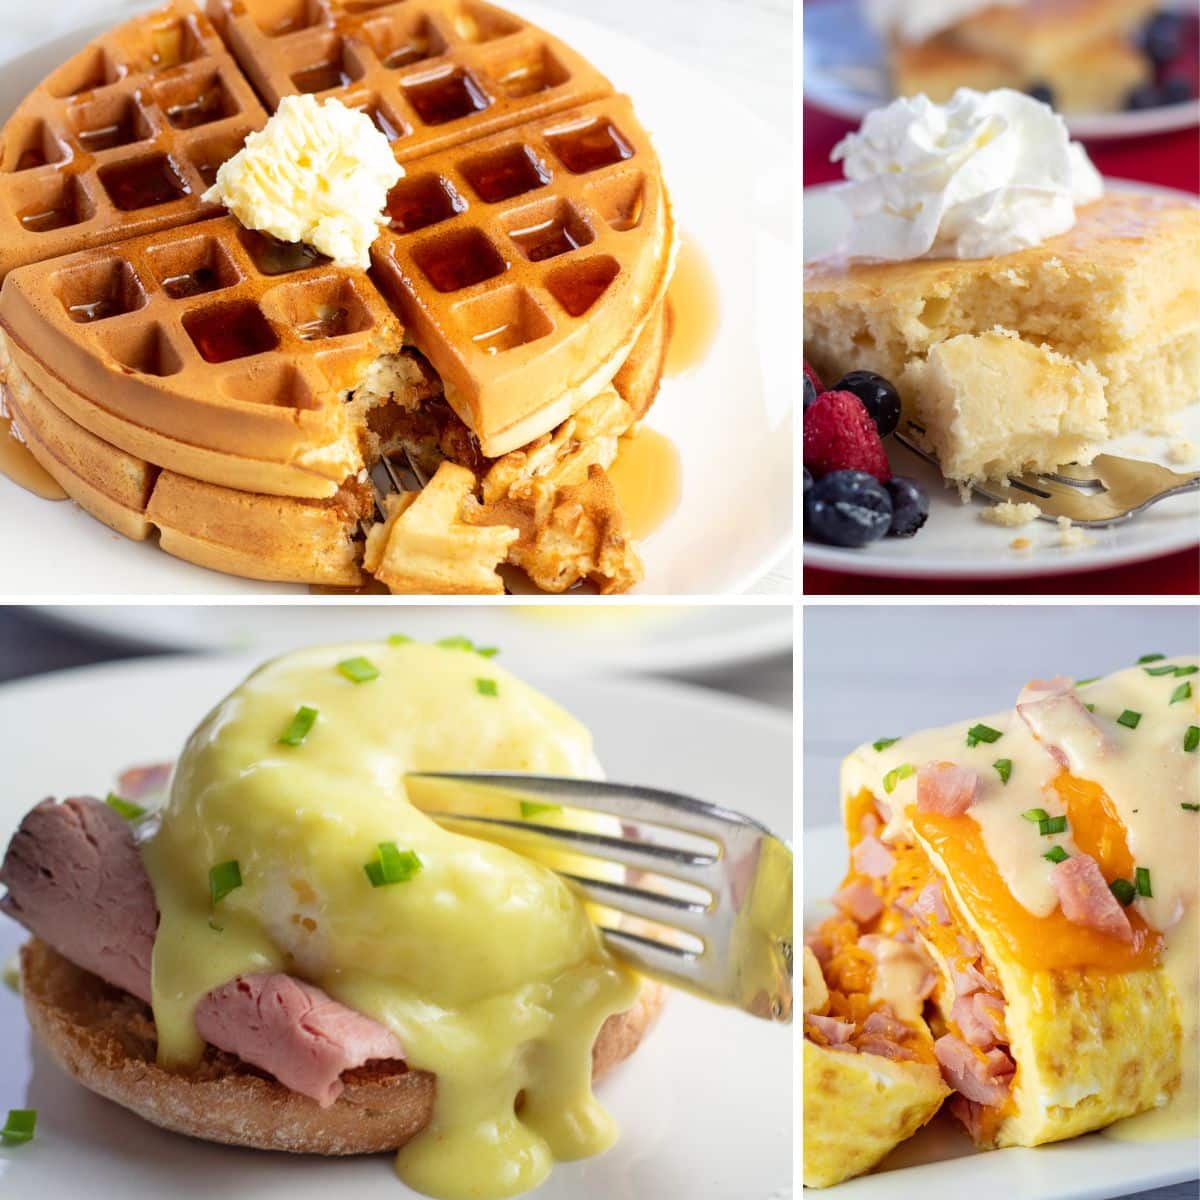 Resimde görülen 4 tatlı ve tuzlu kahvaltı seçeneğiyle Anneler Günü brunch tarifleri kolajı.